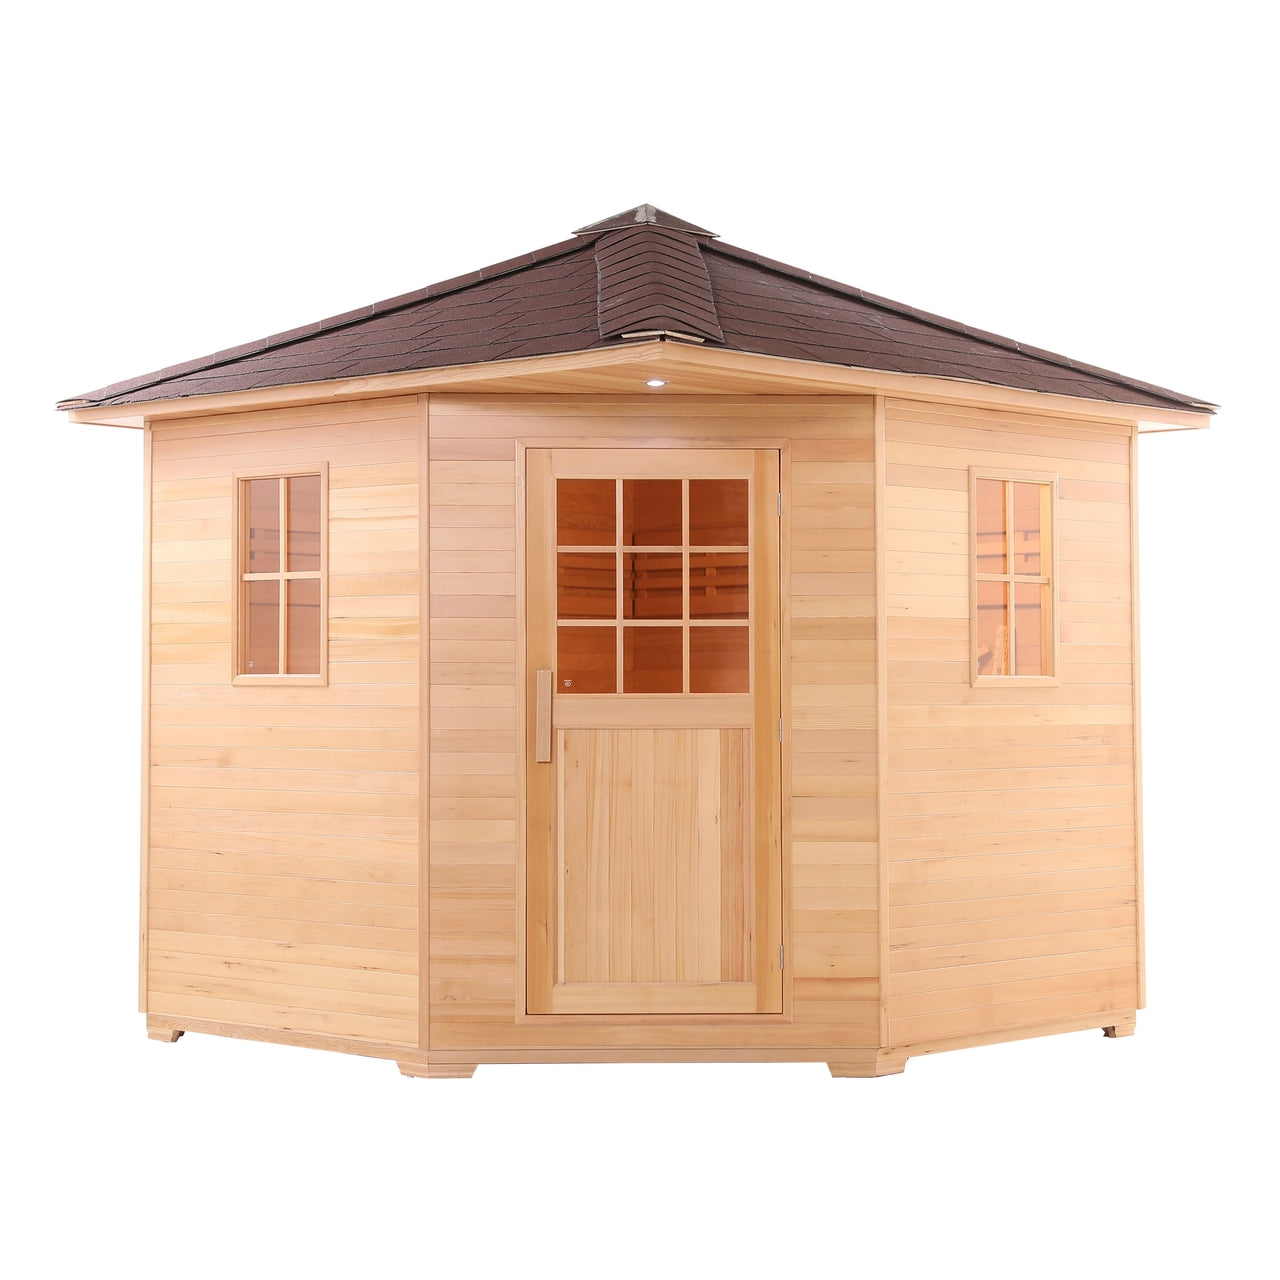 Aleko Canadian Hemlock Wet Dry Outdoor Sauna with Asphalt Roof - 5 Person